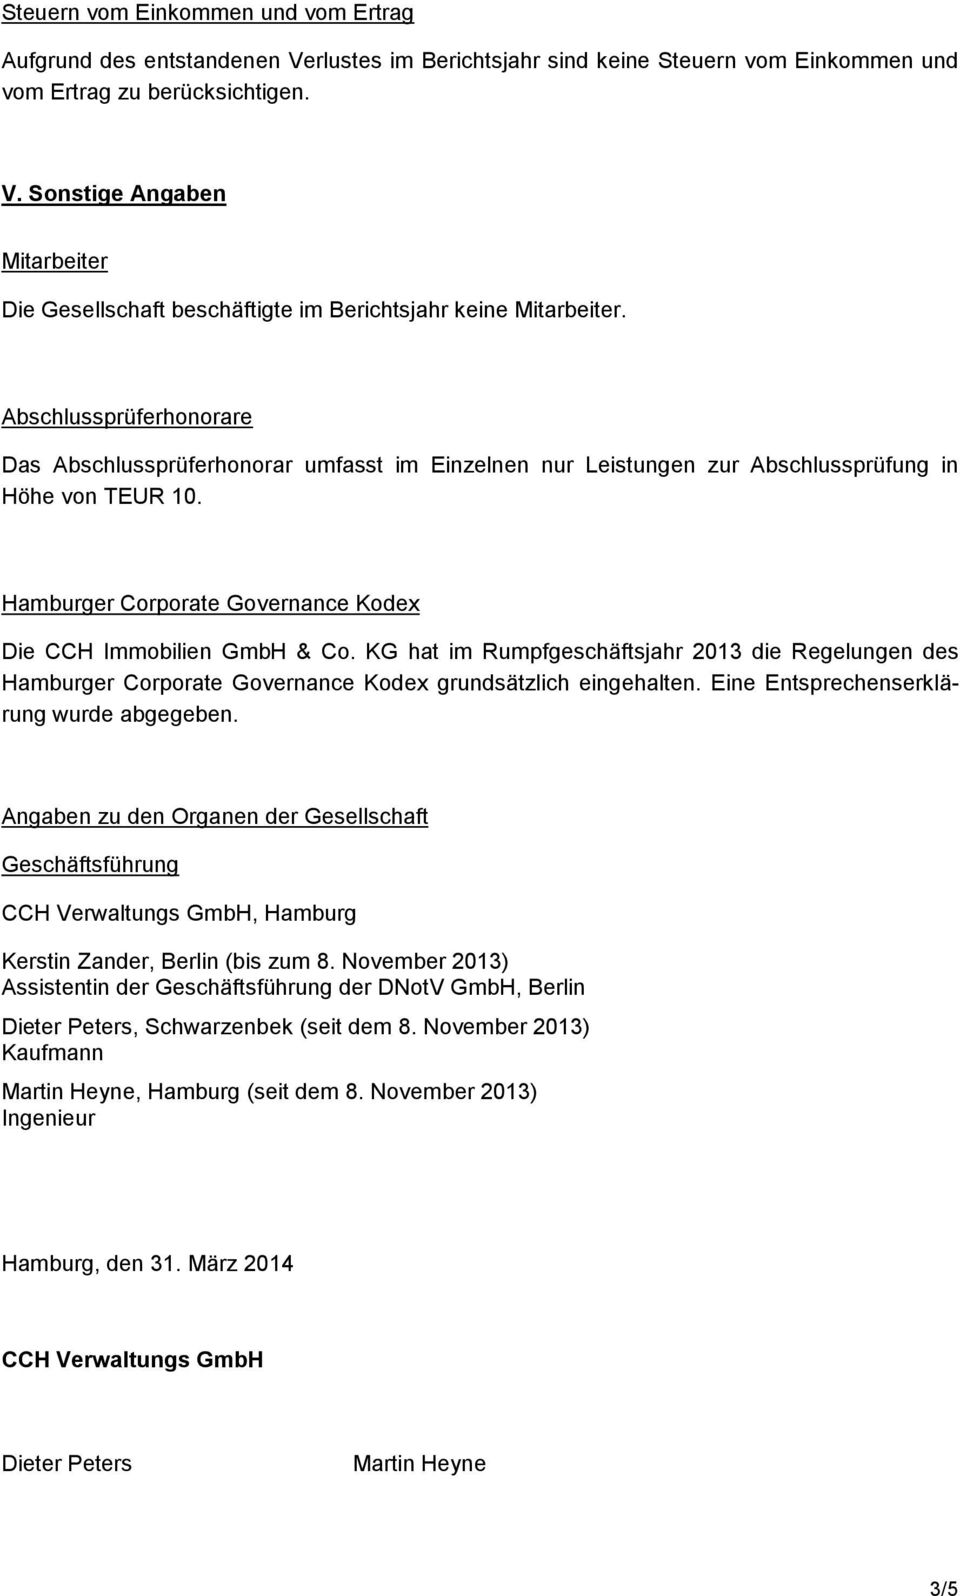 KG hat im Rumpfgeschäftsjahr 2013 die Regelungen des Hamburger Corporate Governance Kodex grundsätzlich eingehalten. Eine Entsprechenserklärung wurde abgegeben.